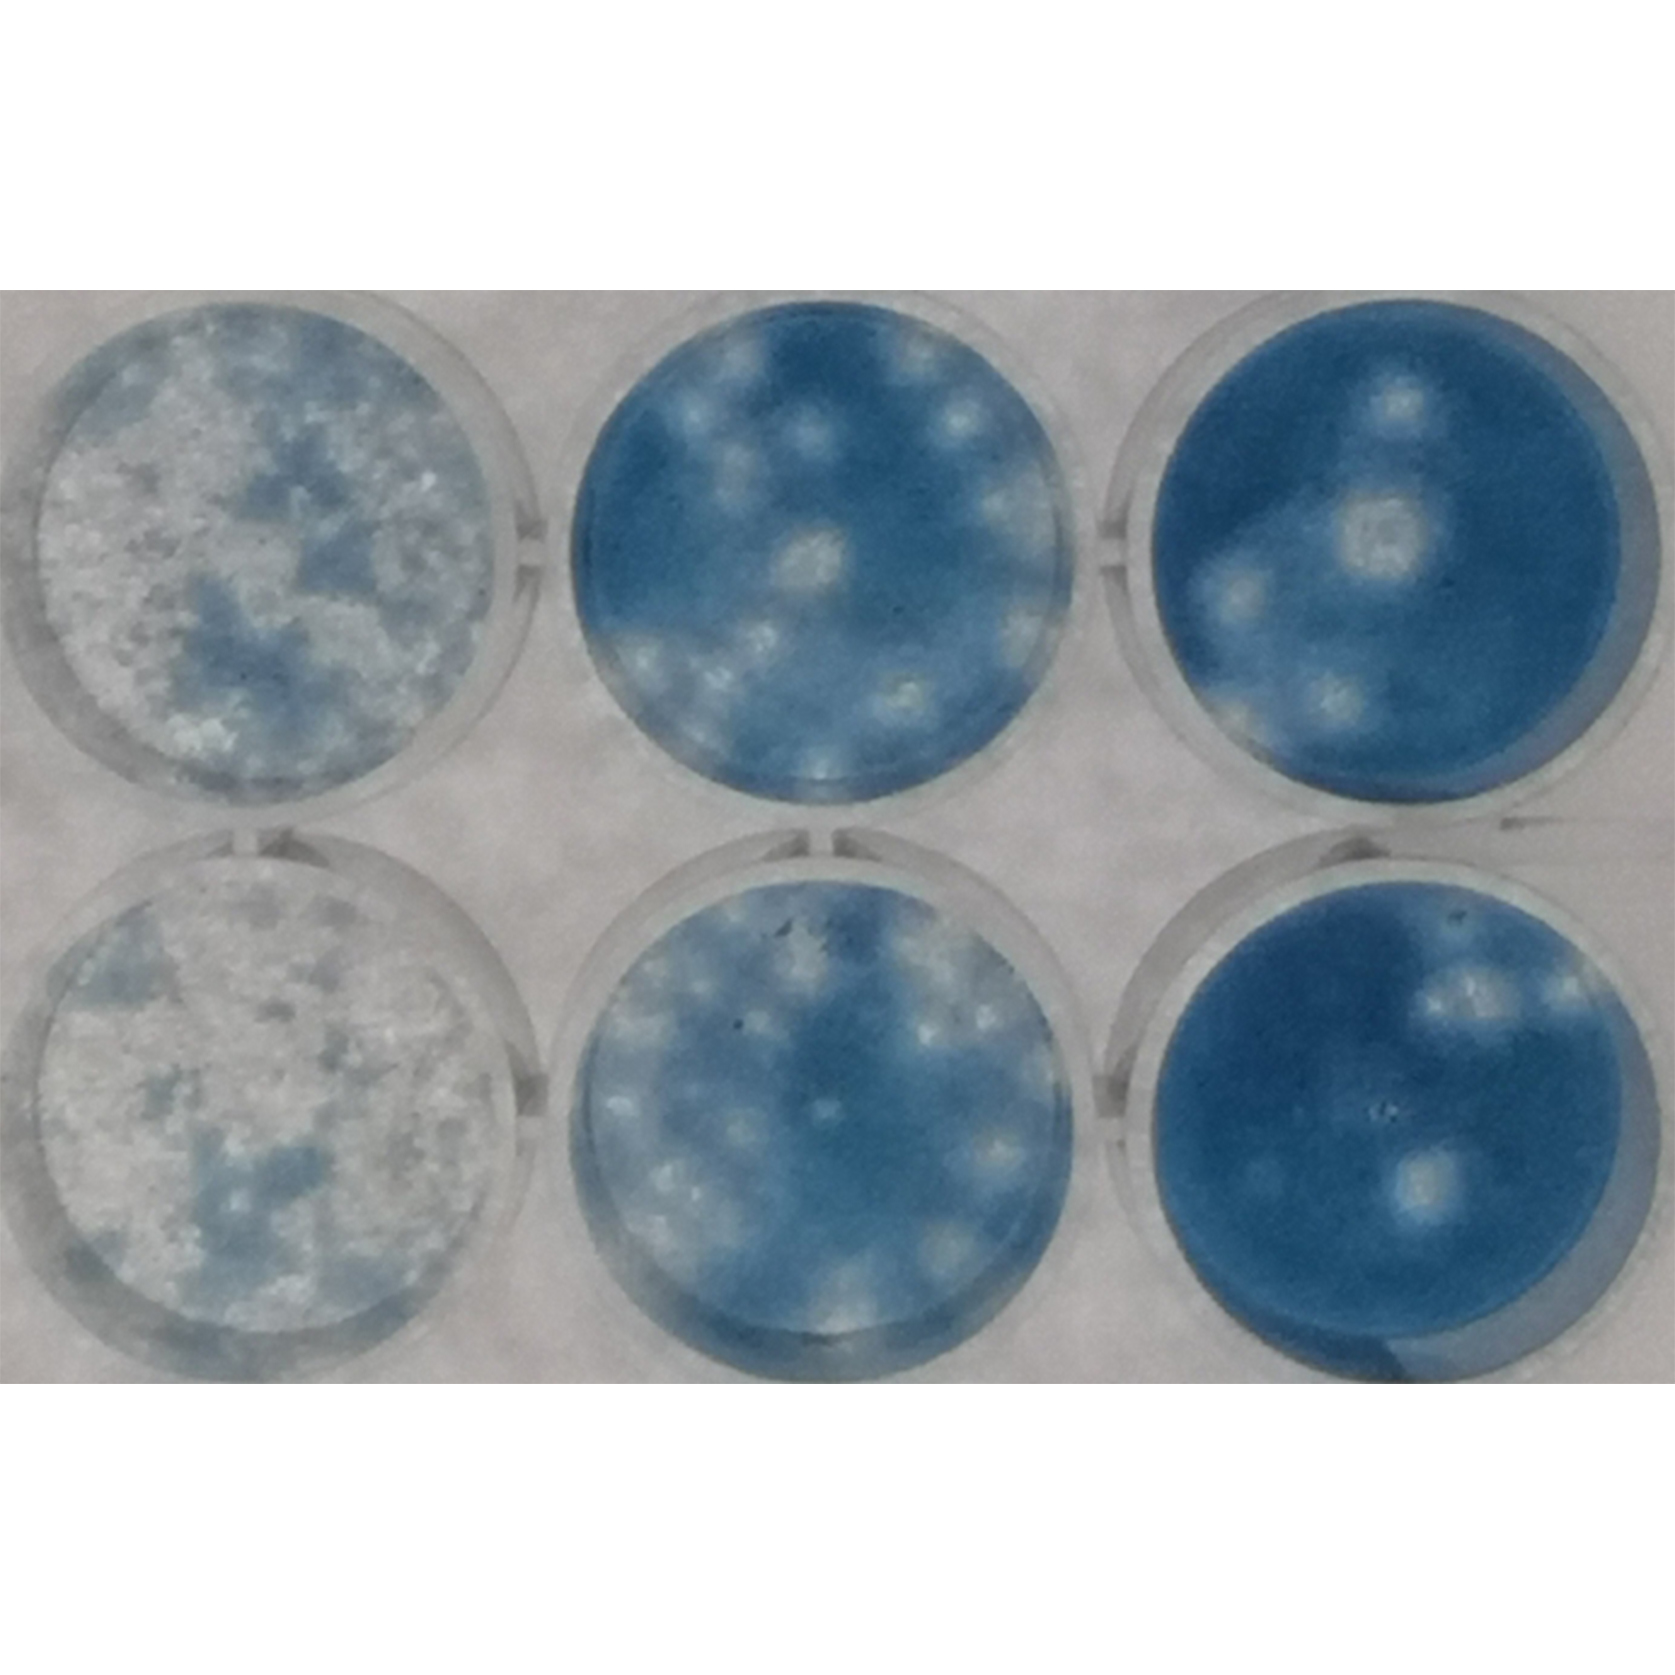 Metoda plakové titrace. Vizualizované plaky (bílá místa bez buněk) po nabarvení zbylých živých neinfikovaných buněk přisedlých na dně jamek titrační desky.